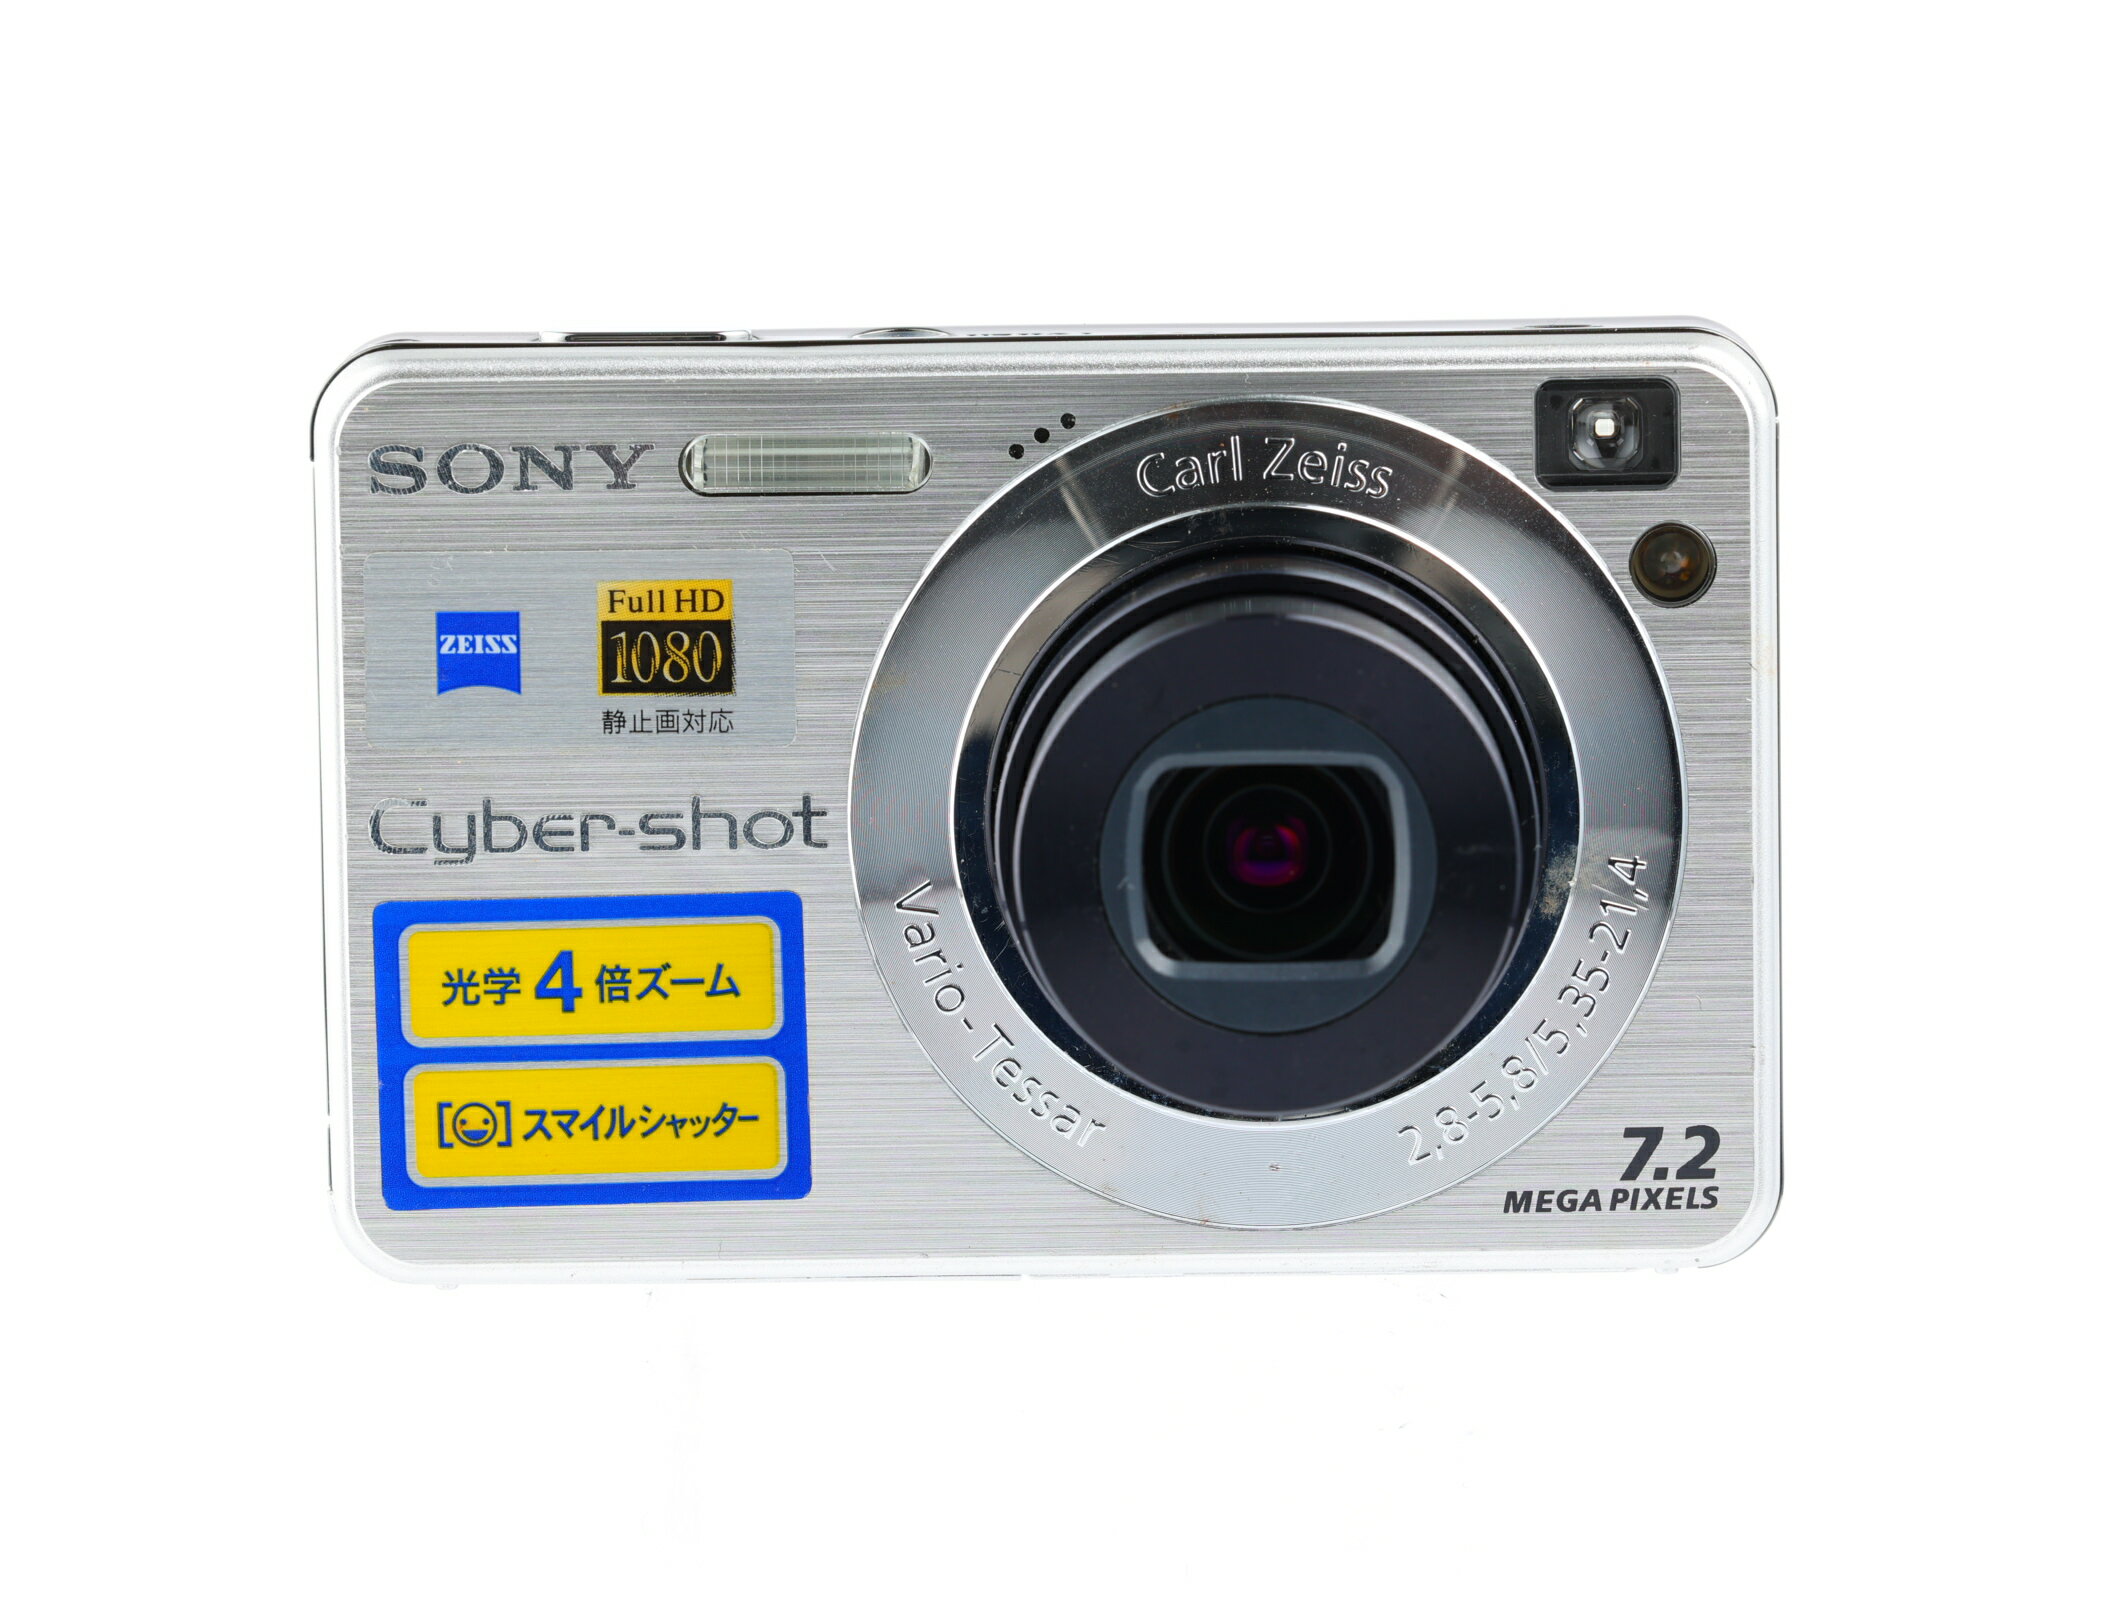 【あす楽】【中古】《良品》【6ヶ月保証】SONY Cyber-shot DSC-W110 720万画素 光学4倍ズーム 小型 軽量 旅行 コンパクトデジタルカメラ コンデジ